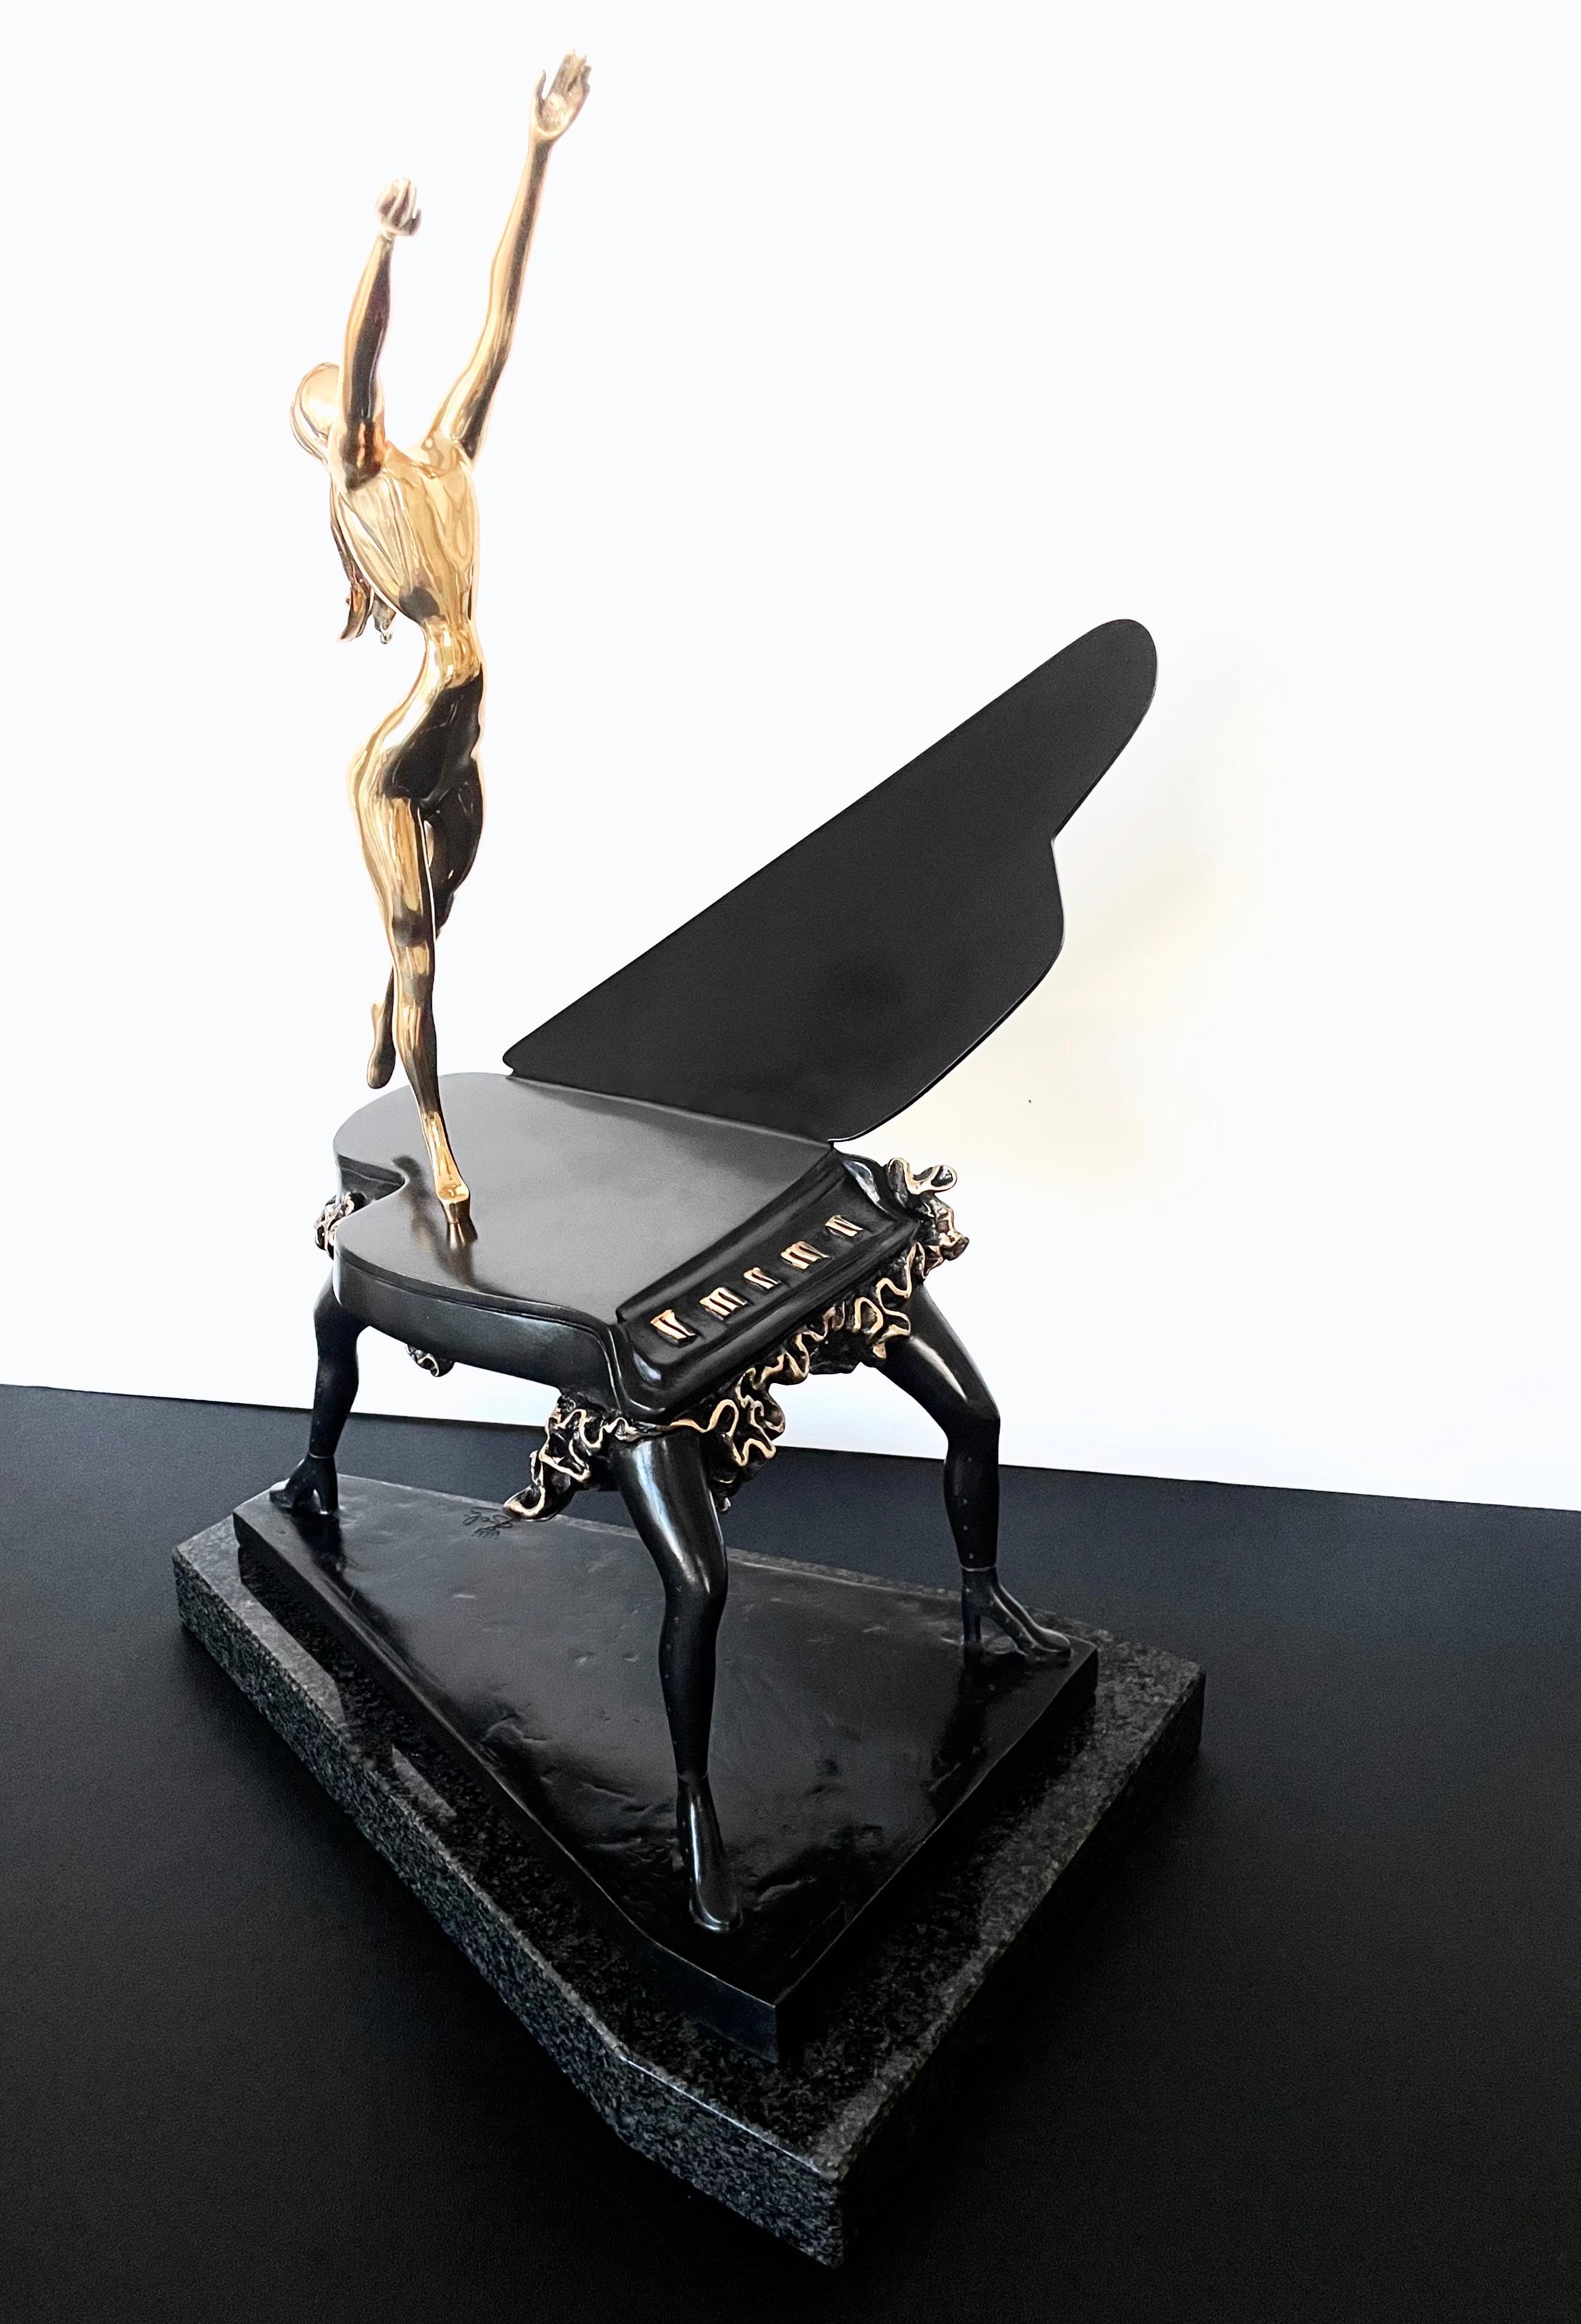 Piano surréaliste, Salvador Dali - Sculpture by Salvador Dalí